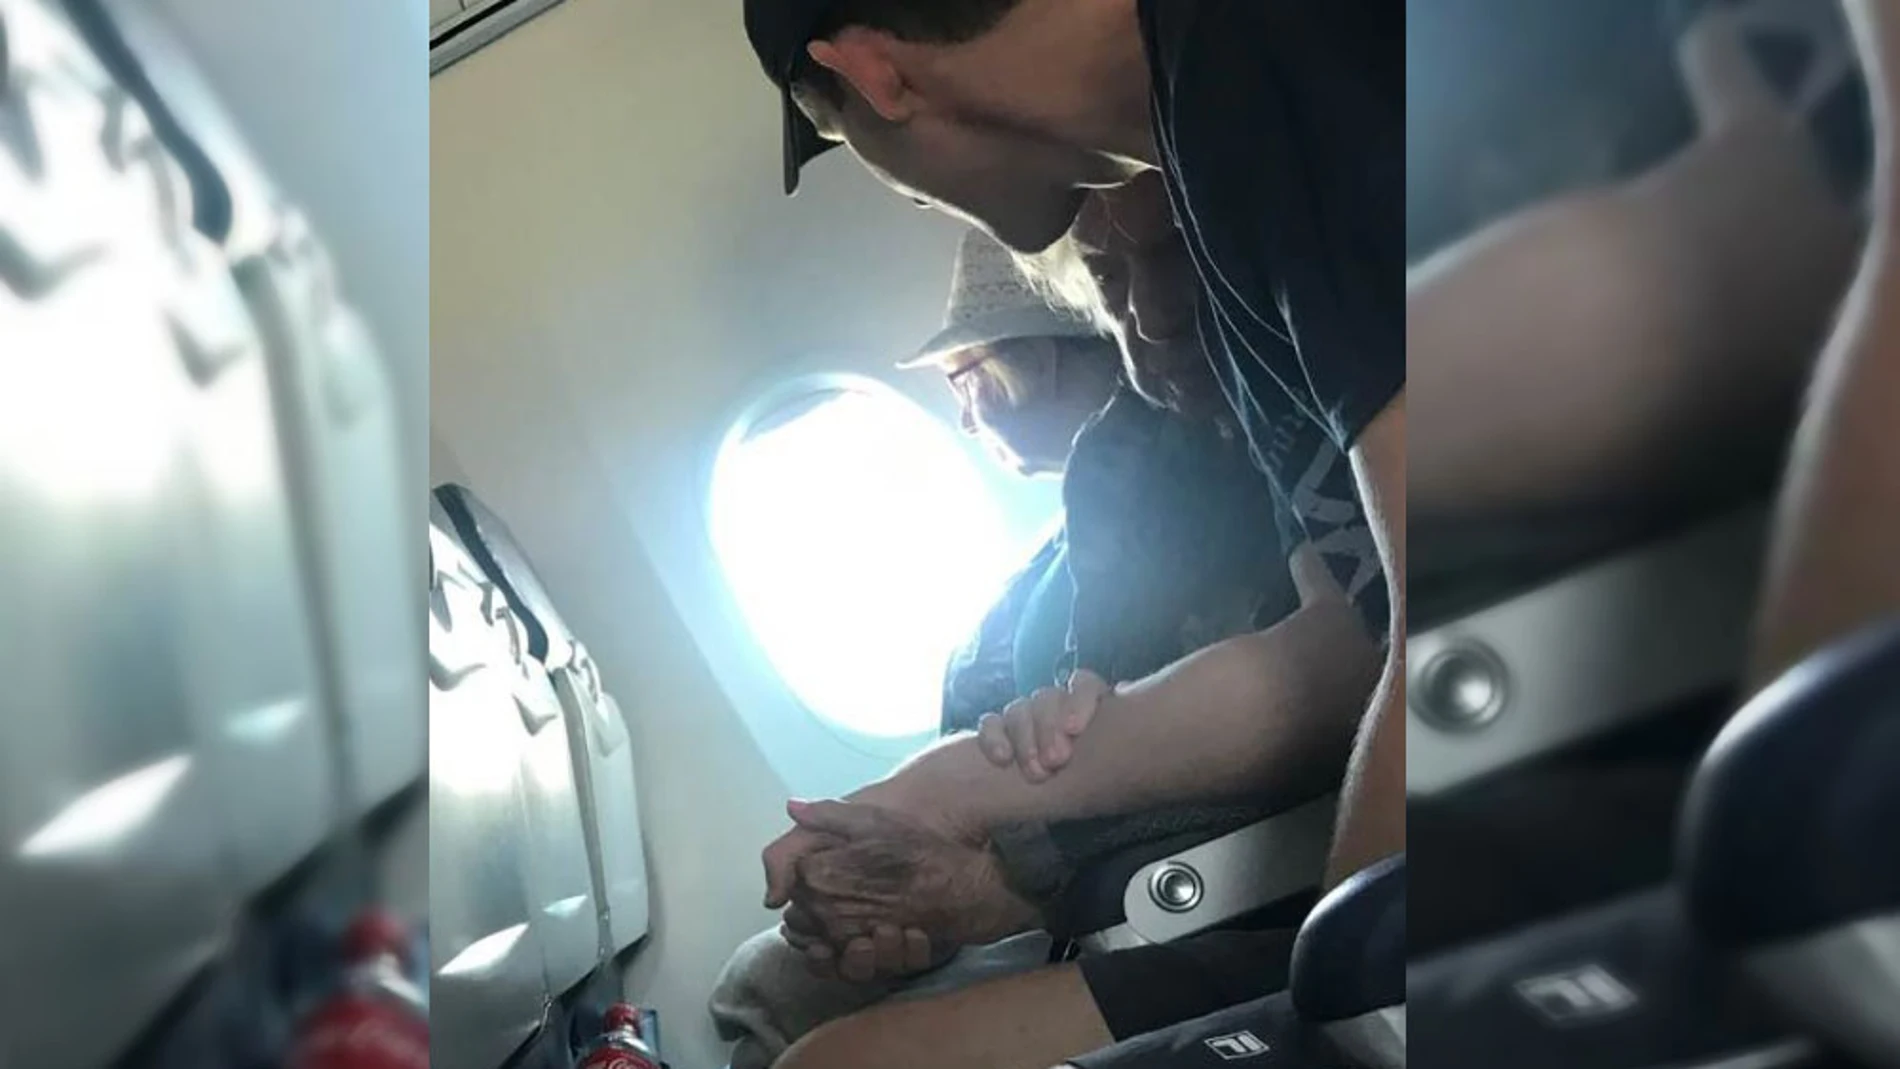 La enternecedora imagen de un joven que tranquiliza a una mujer de 96 años durante las turbulencias de un vuelo